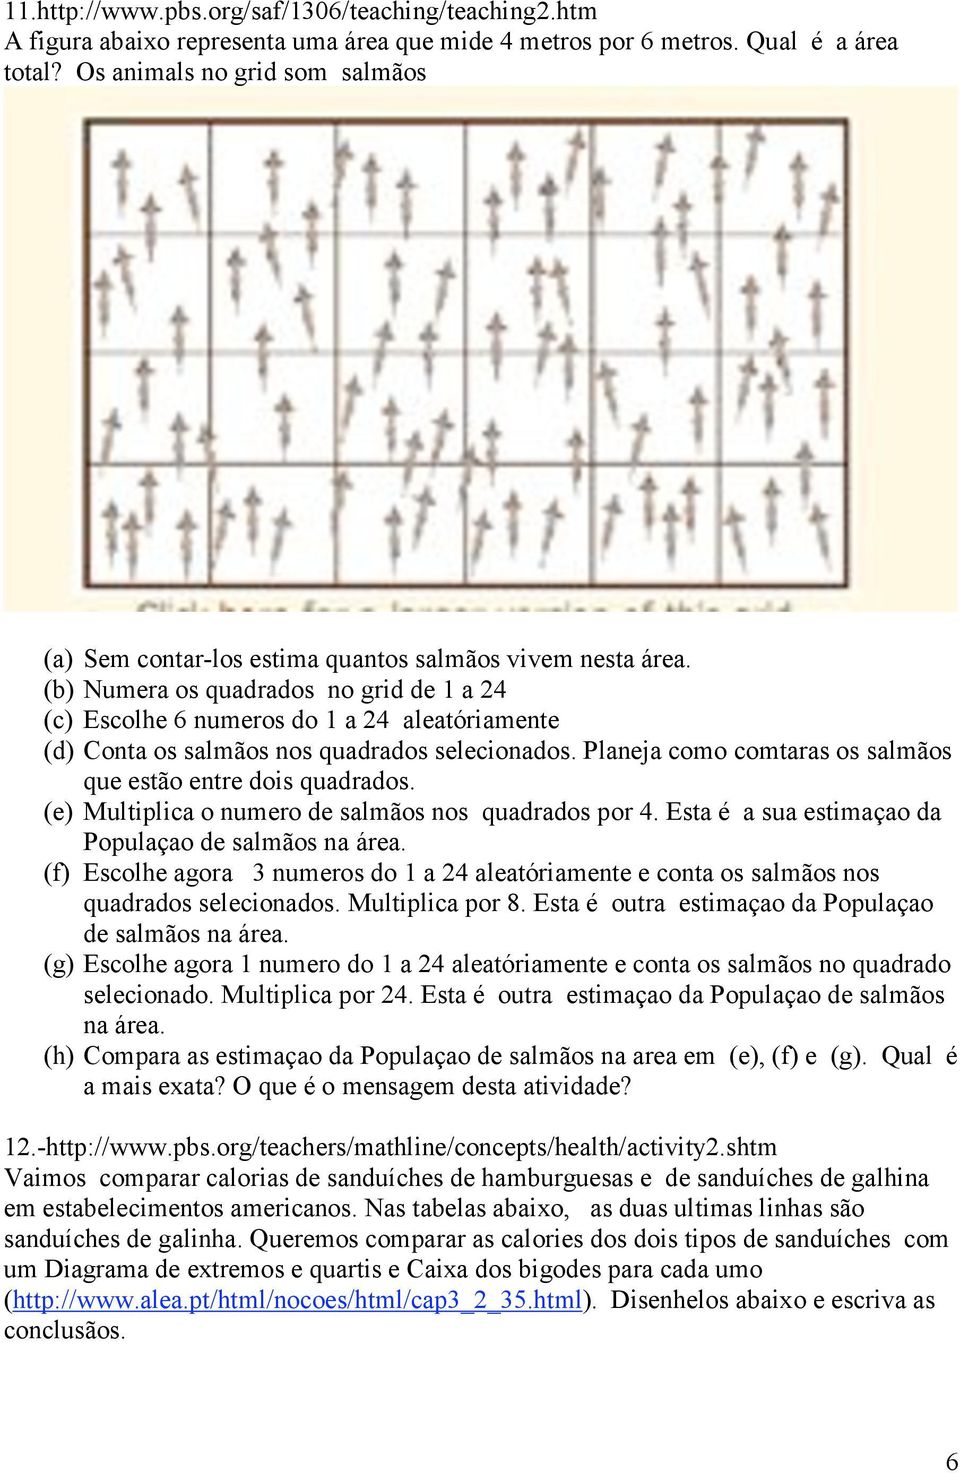 (b) Numera os quadrados no grid de 1 a 24 (c) Escolhe 6 numeros do 1 a 24 aleatóriamente (d) Conta os salmãos nos quadrados selecionados.